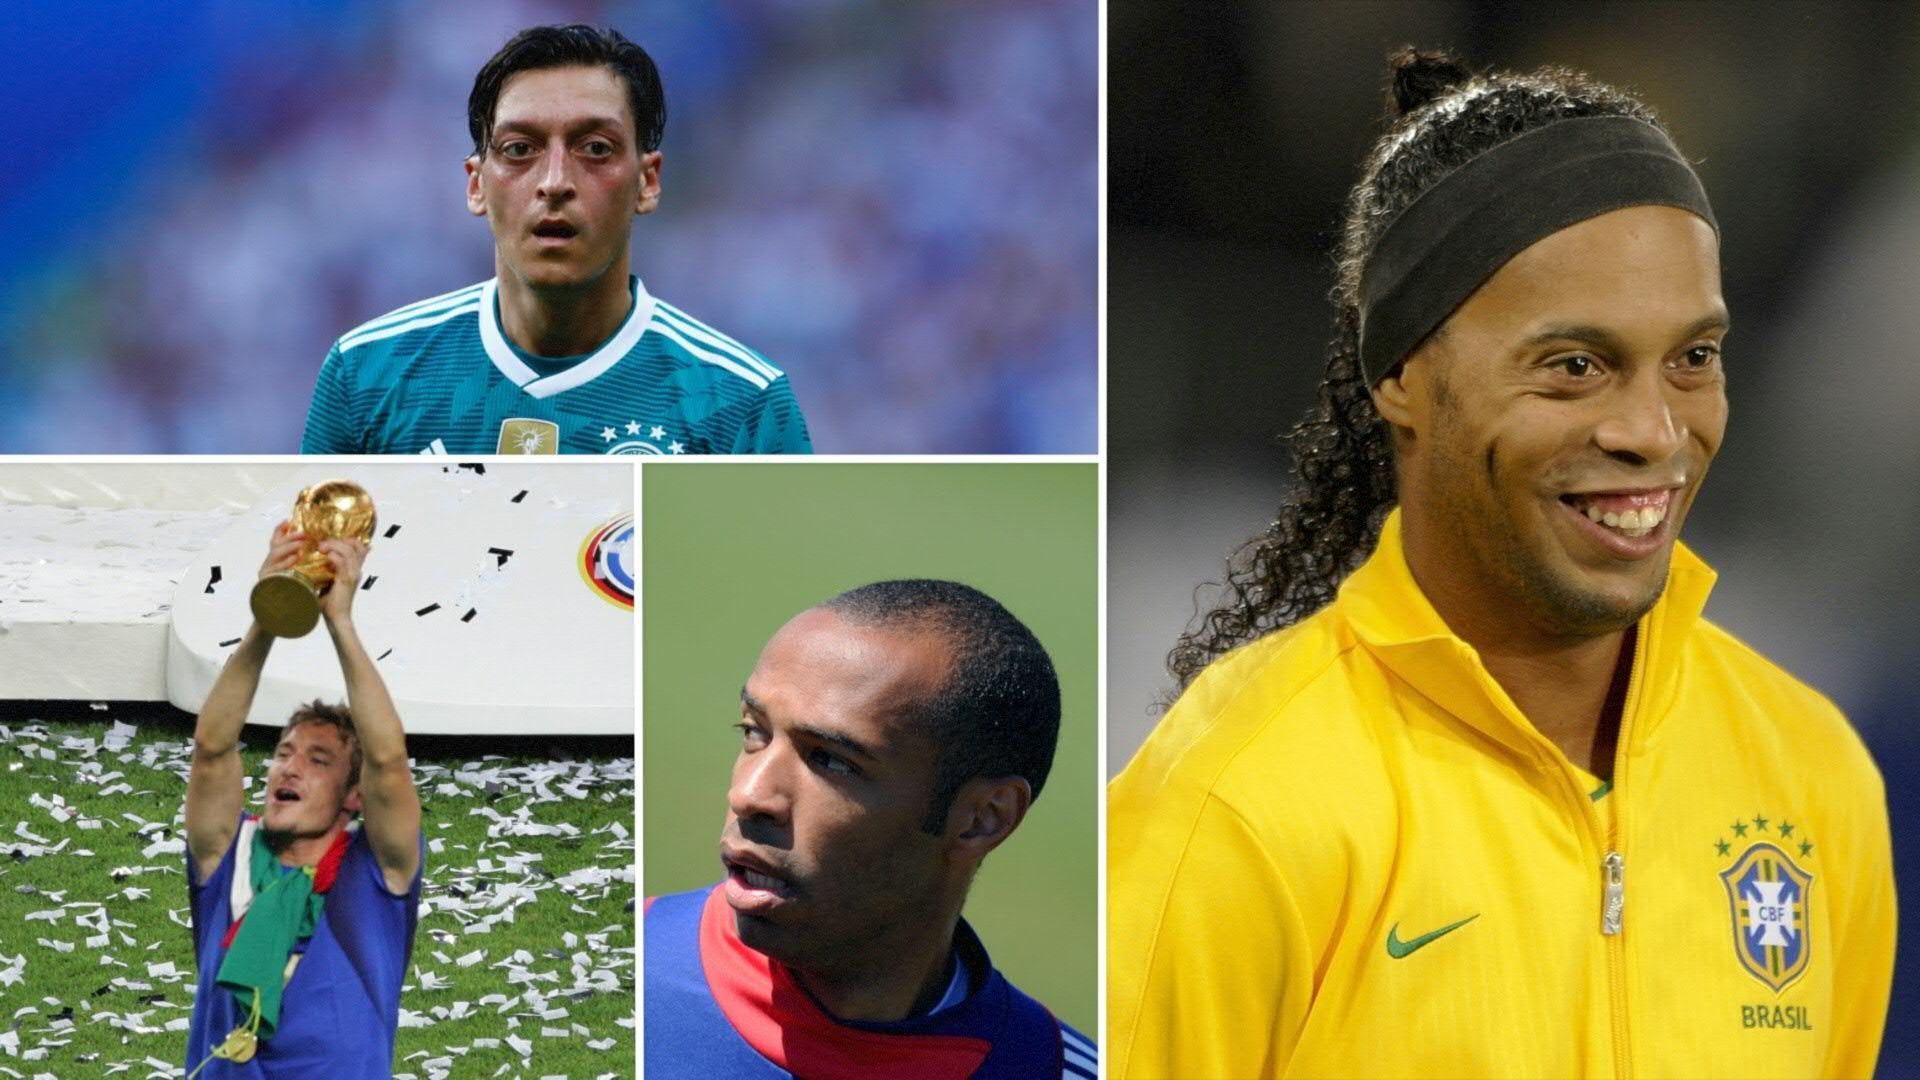 Medien: Ü35-WM mit Özil, Ronaldinho und Henry kommt